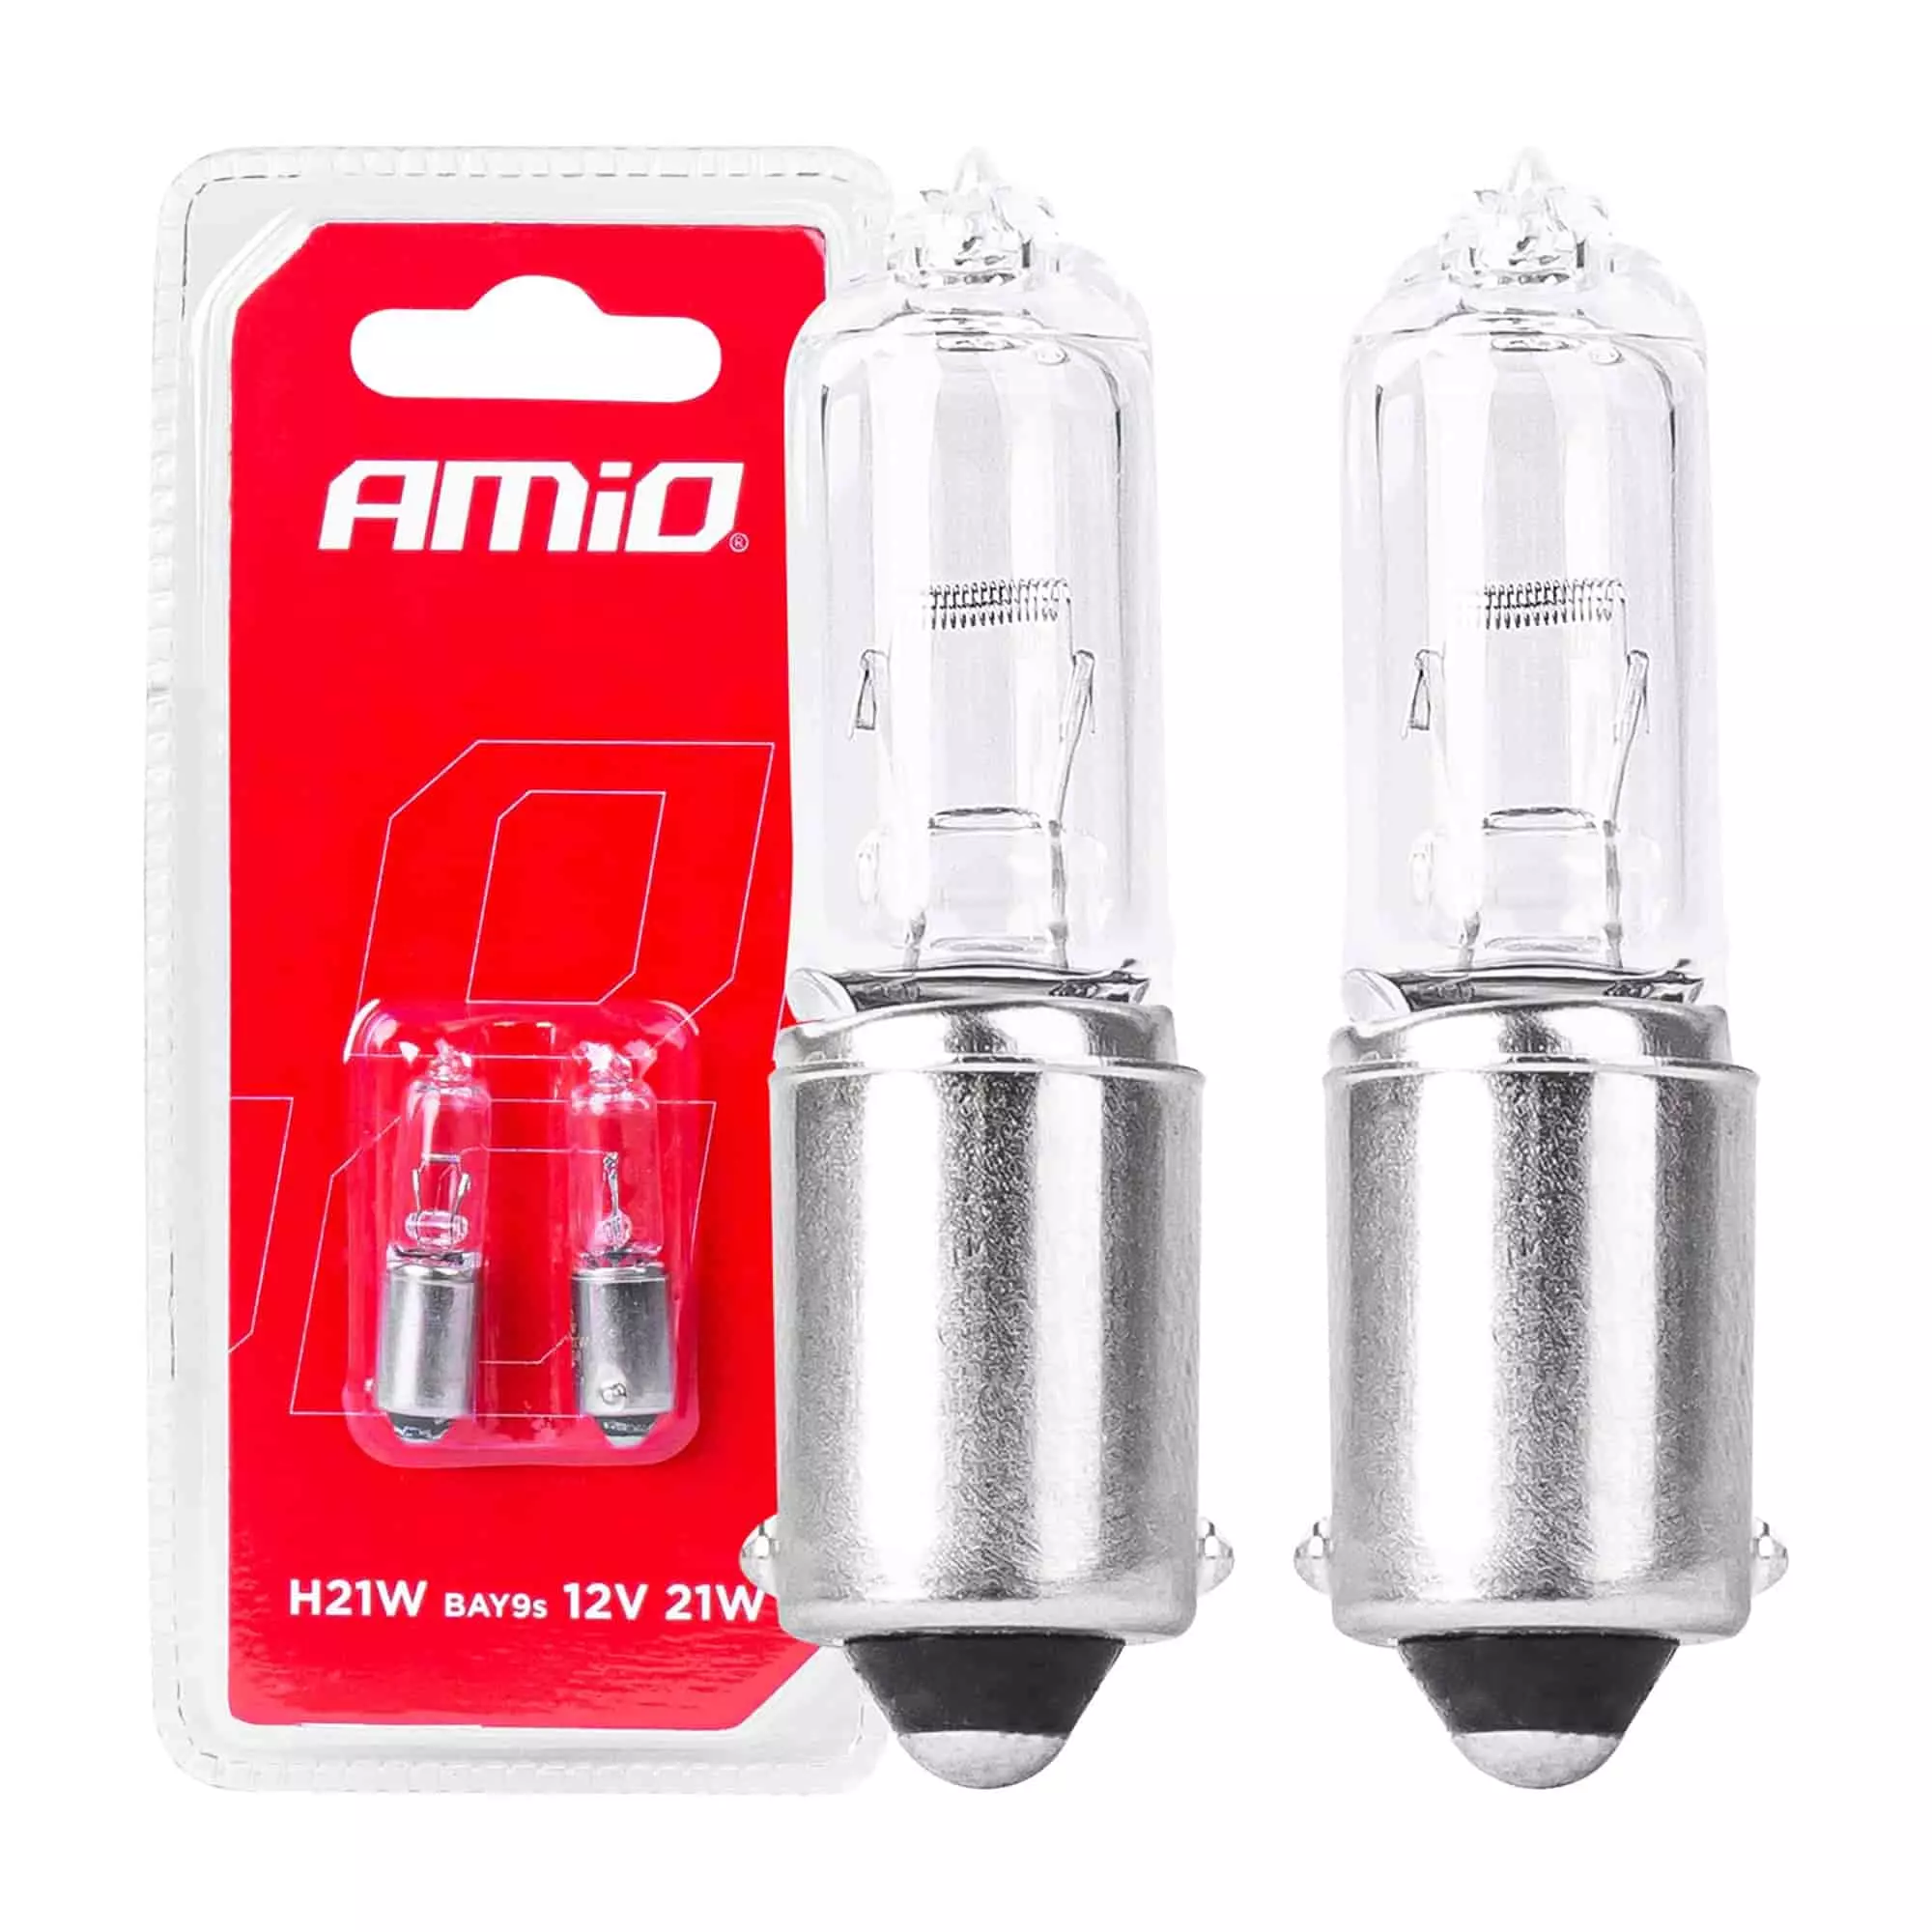 Галогенные лампочки Amio H21W 12V 21W BAY9S White 2шт (03357)